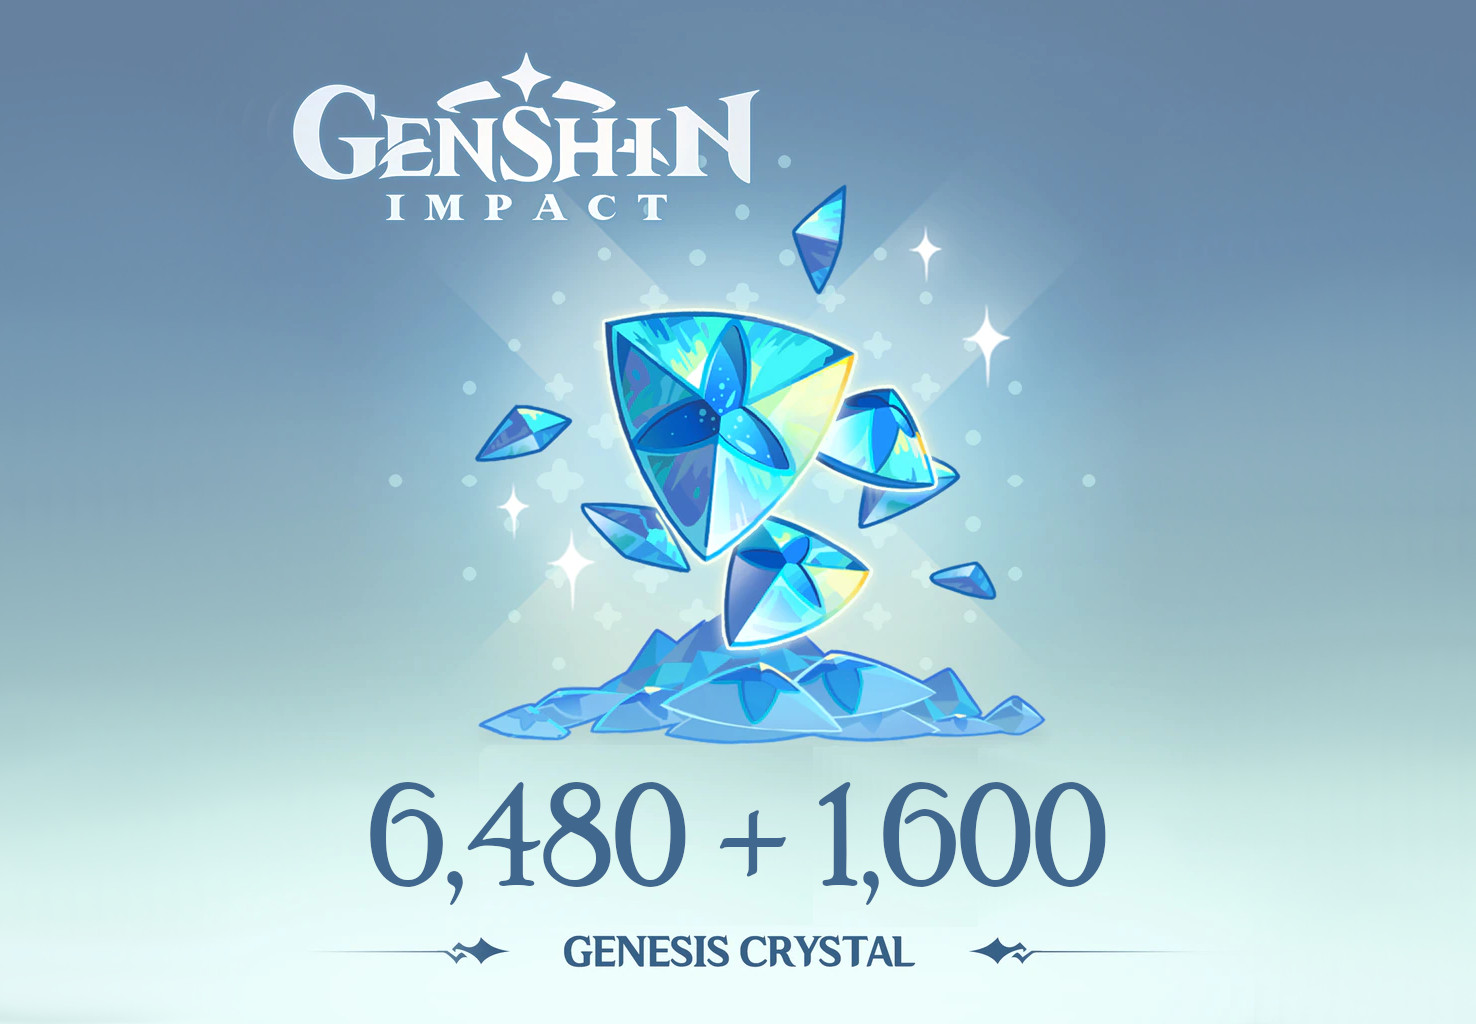 Genshin Impact - 6,480 + 1,600 Genesis Crystals Reidos Voucher $107.29